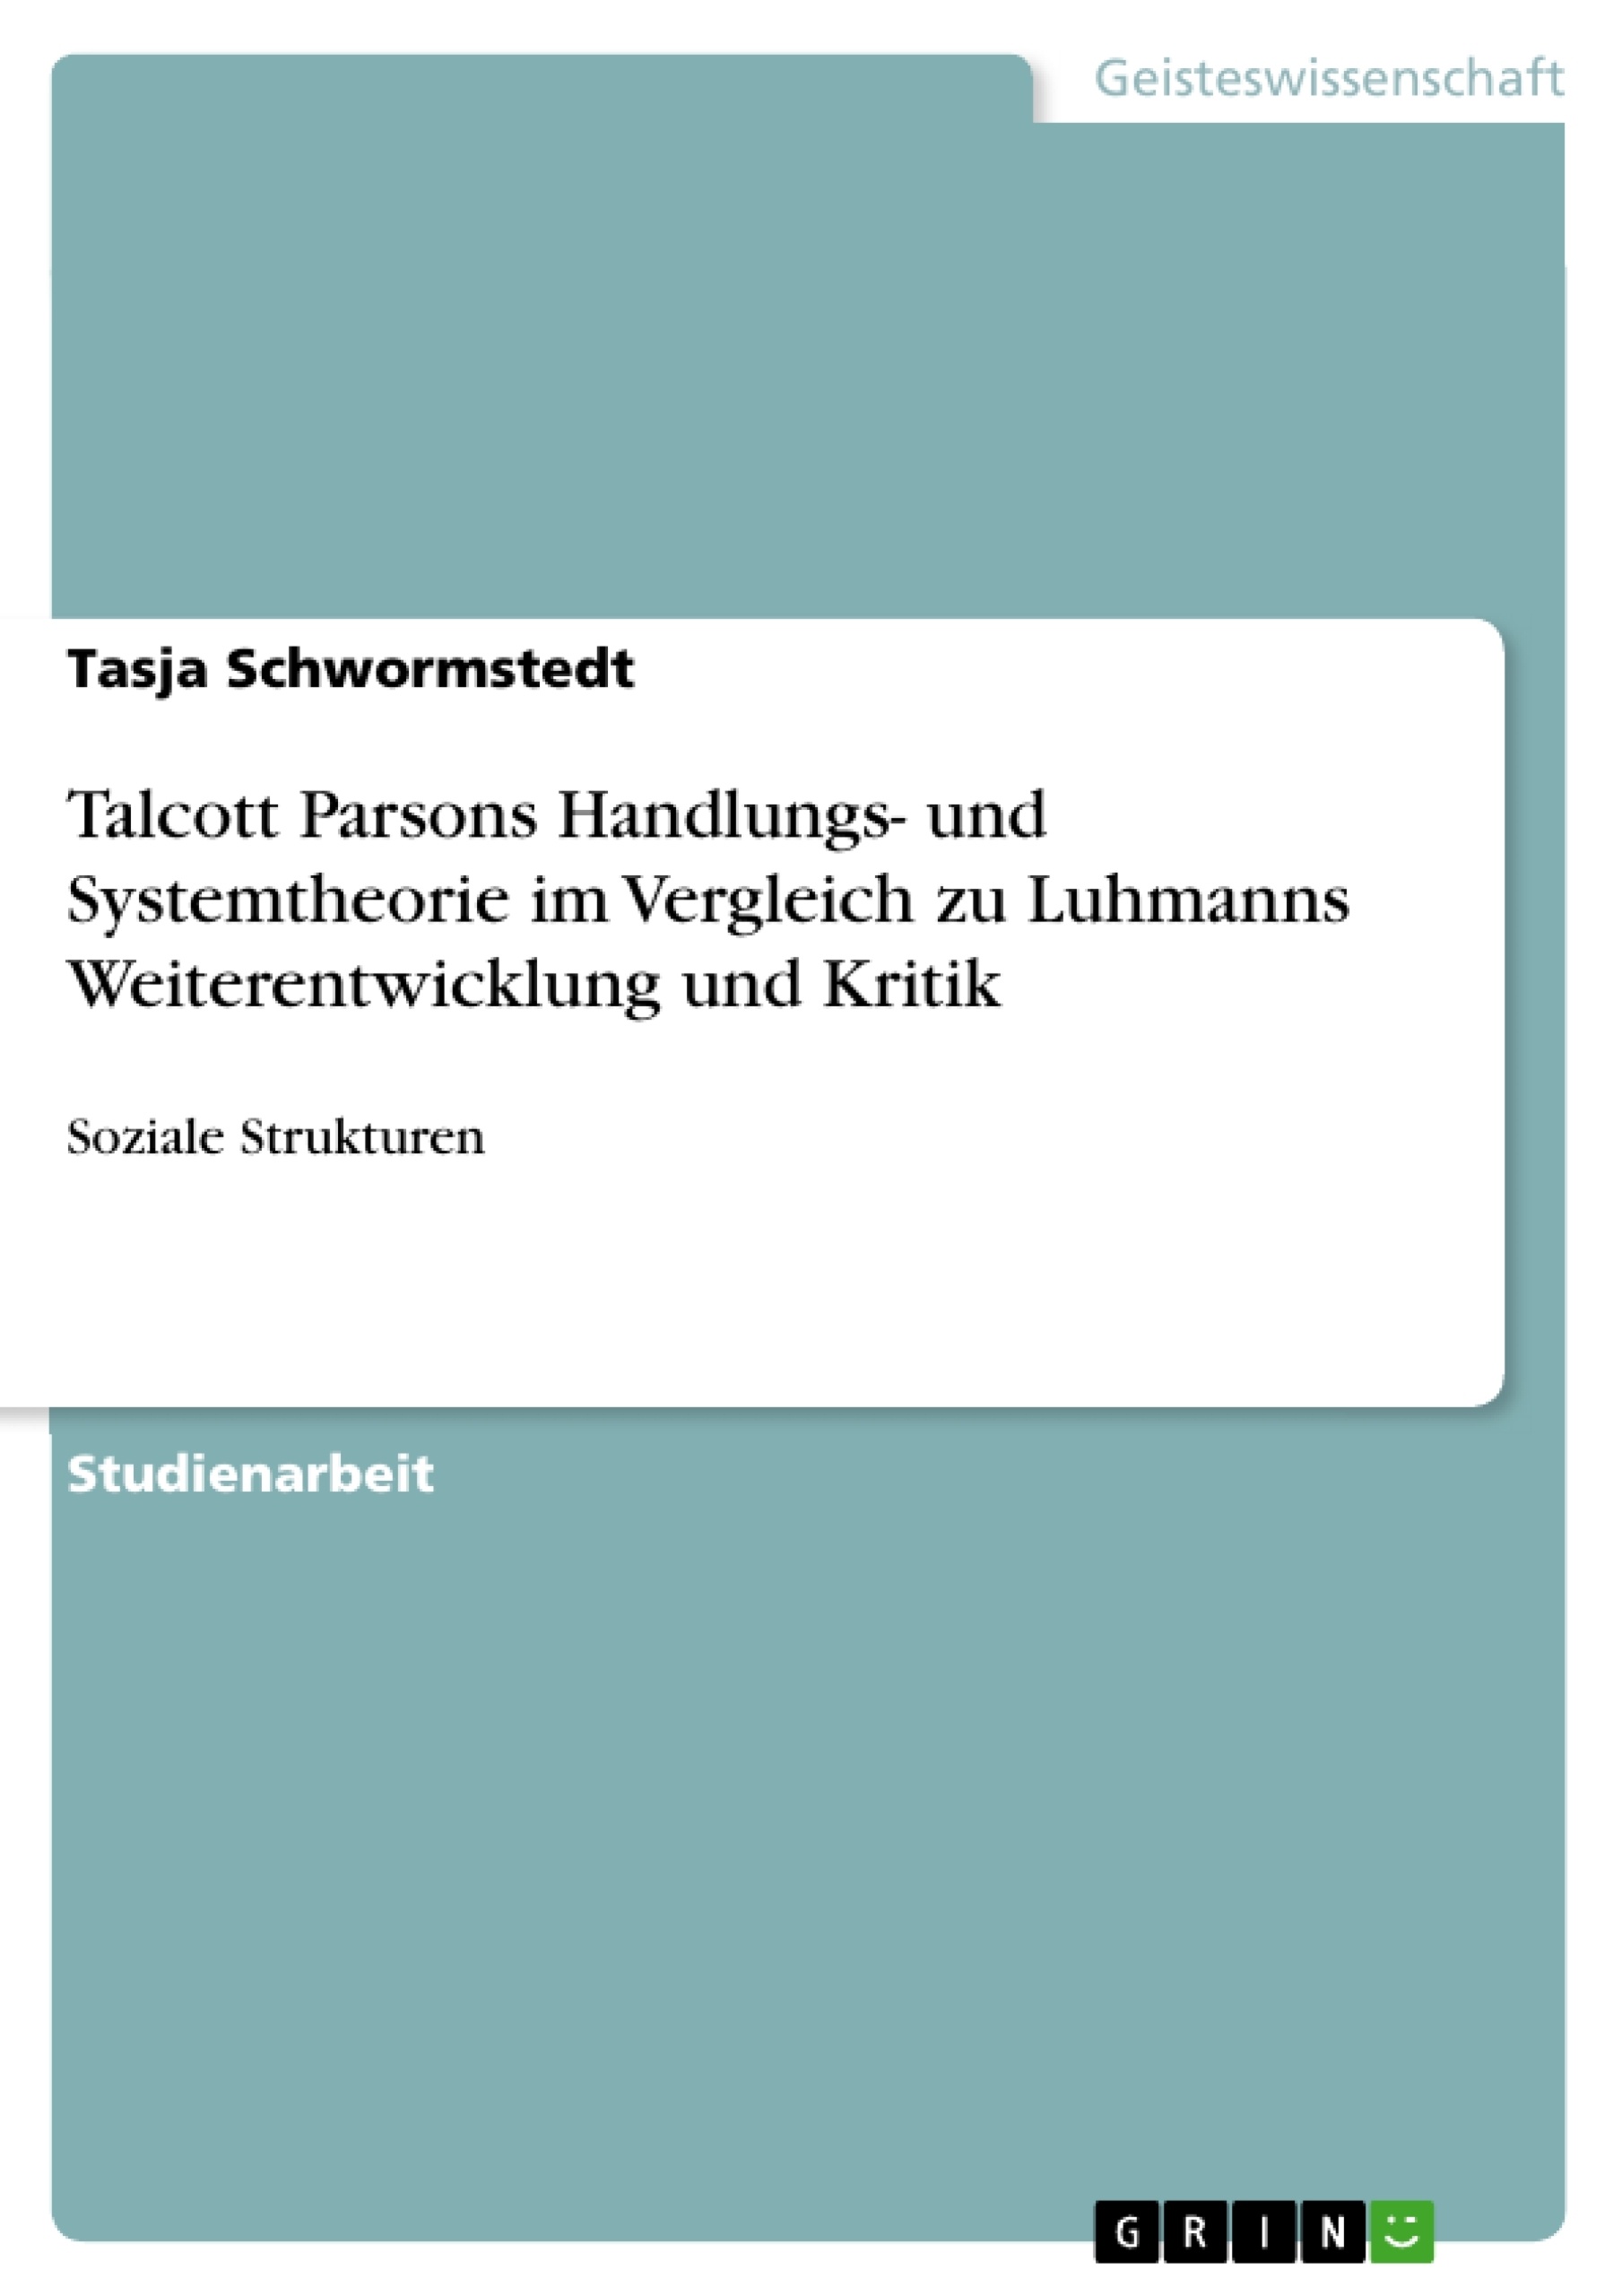 Titre: Talcott Parsons Handlungs- und Systemtheorie im Vergleich zu Luhmanns Weiterentwicklung und Kritik